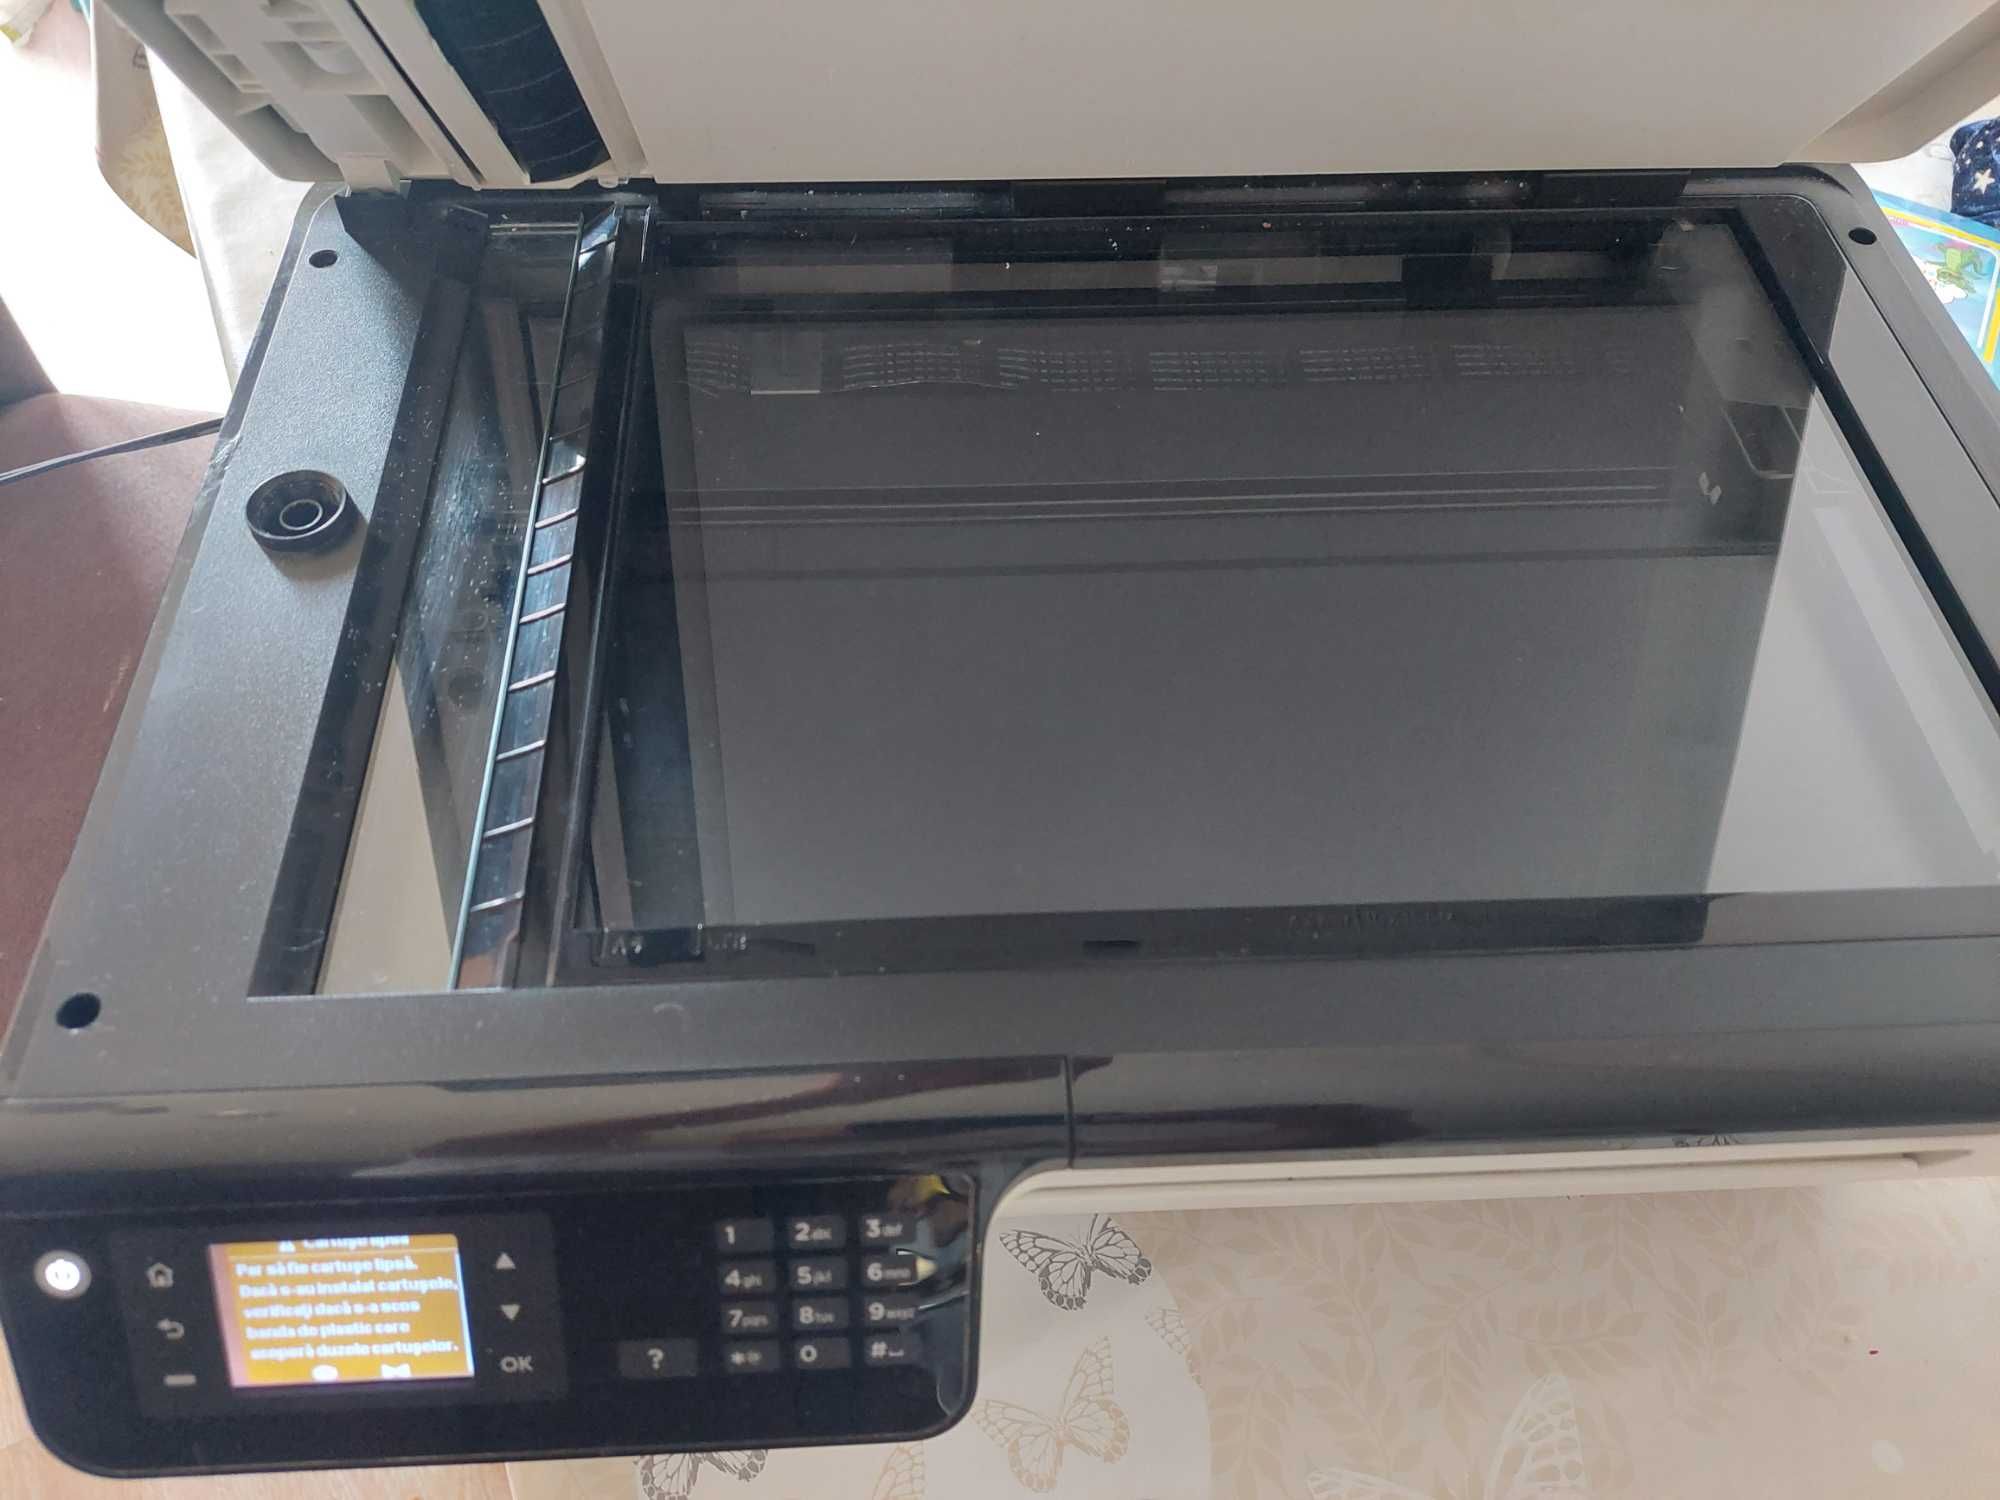 Imprimanta /scanner hp